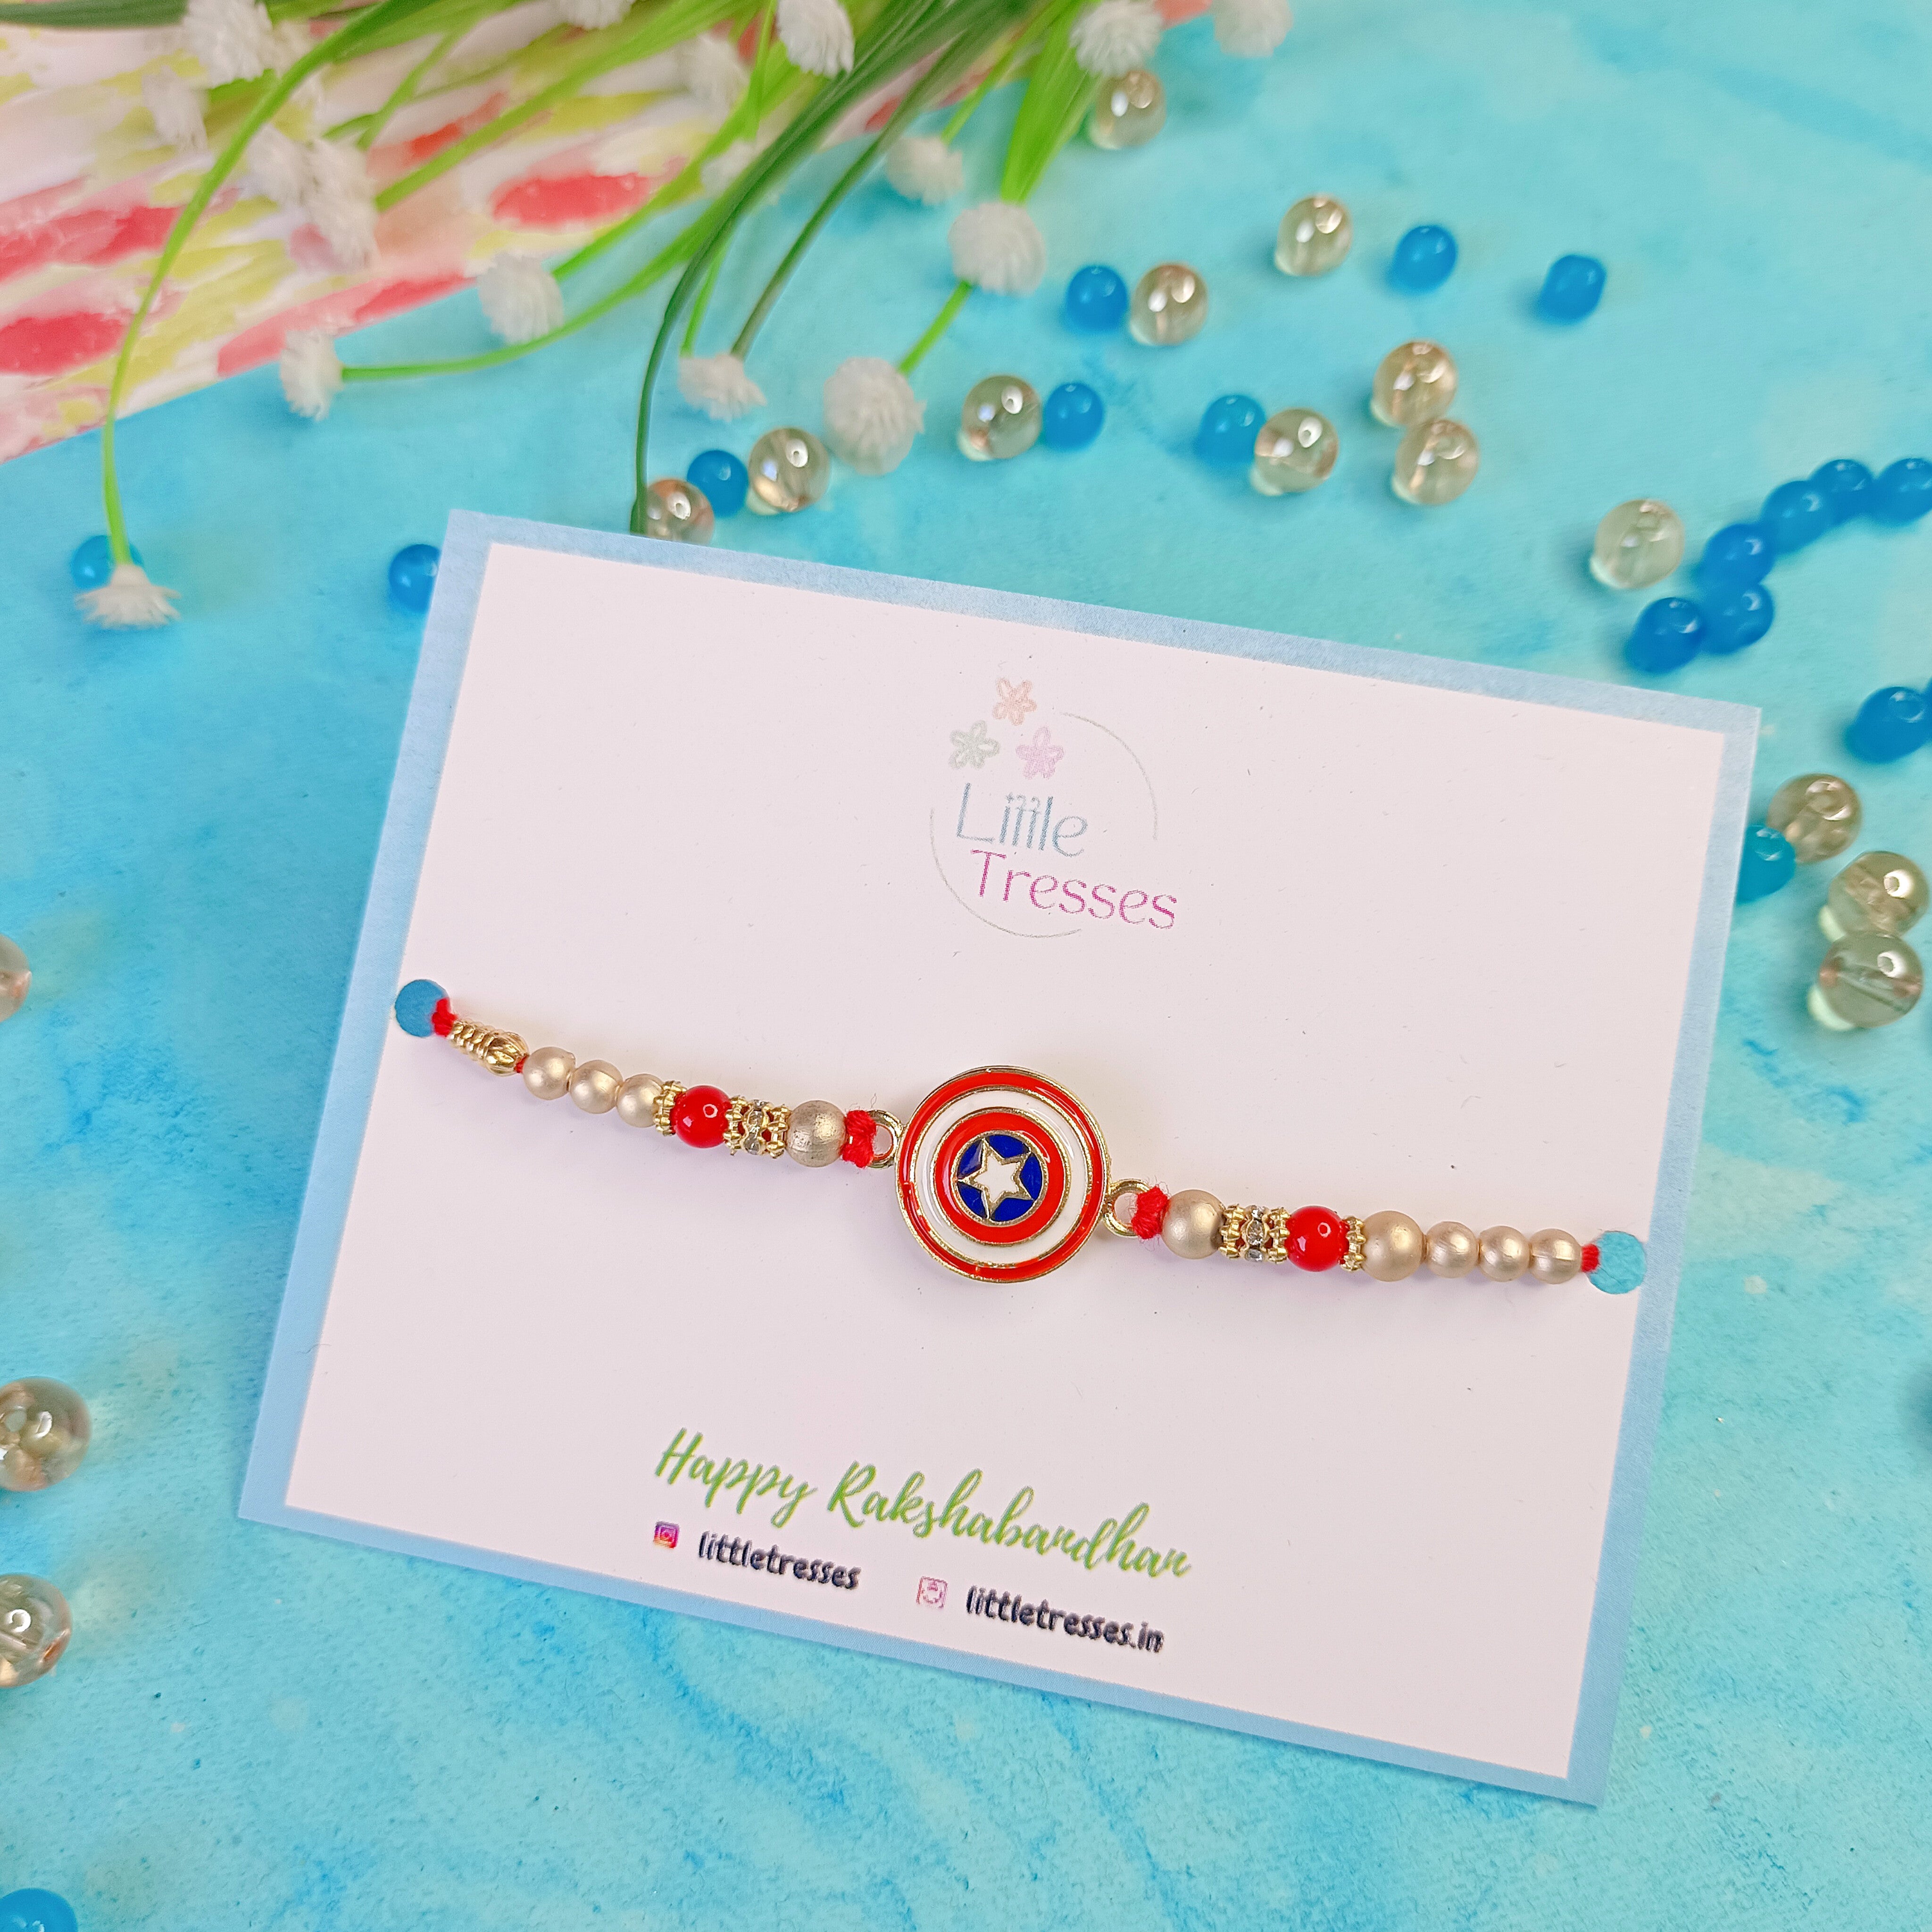 Share more than 96 captain america friendship bracelet latest  POPPY